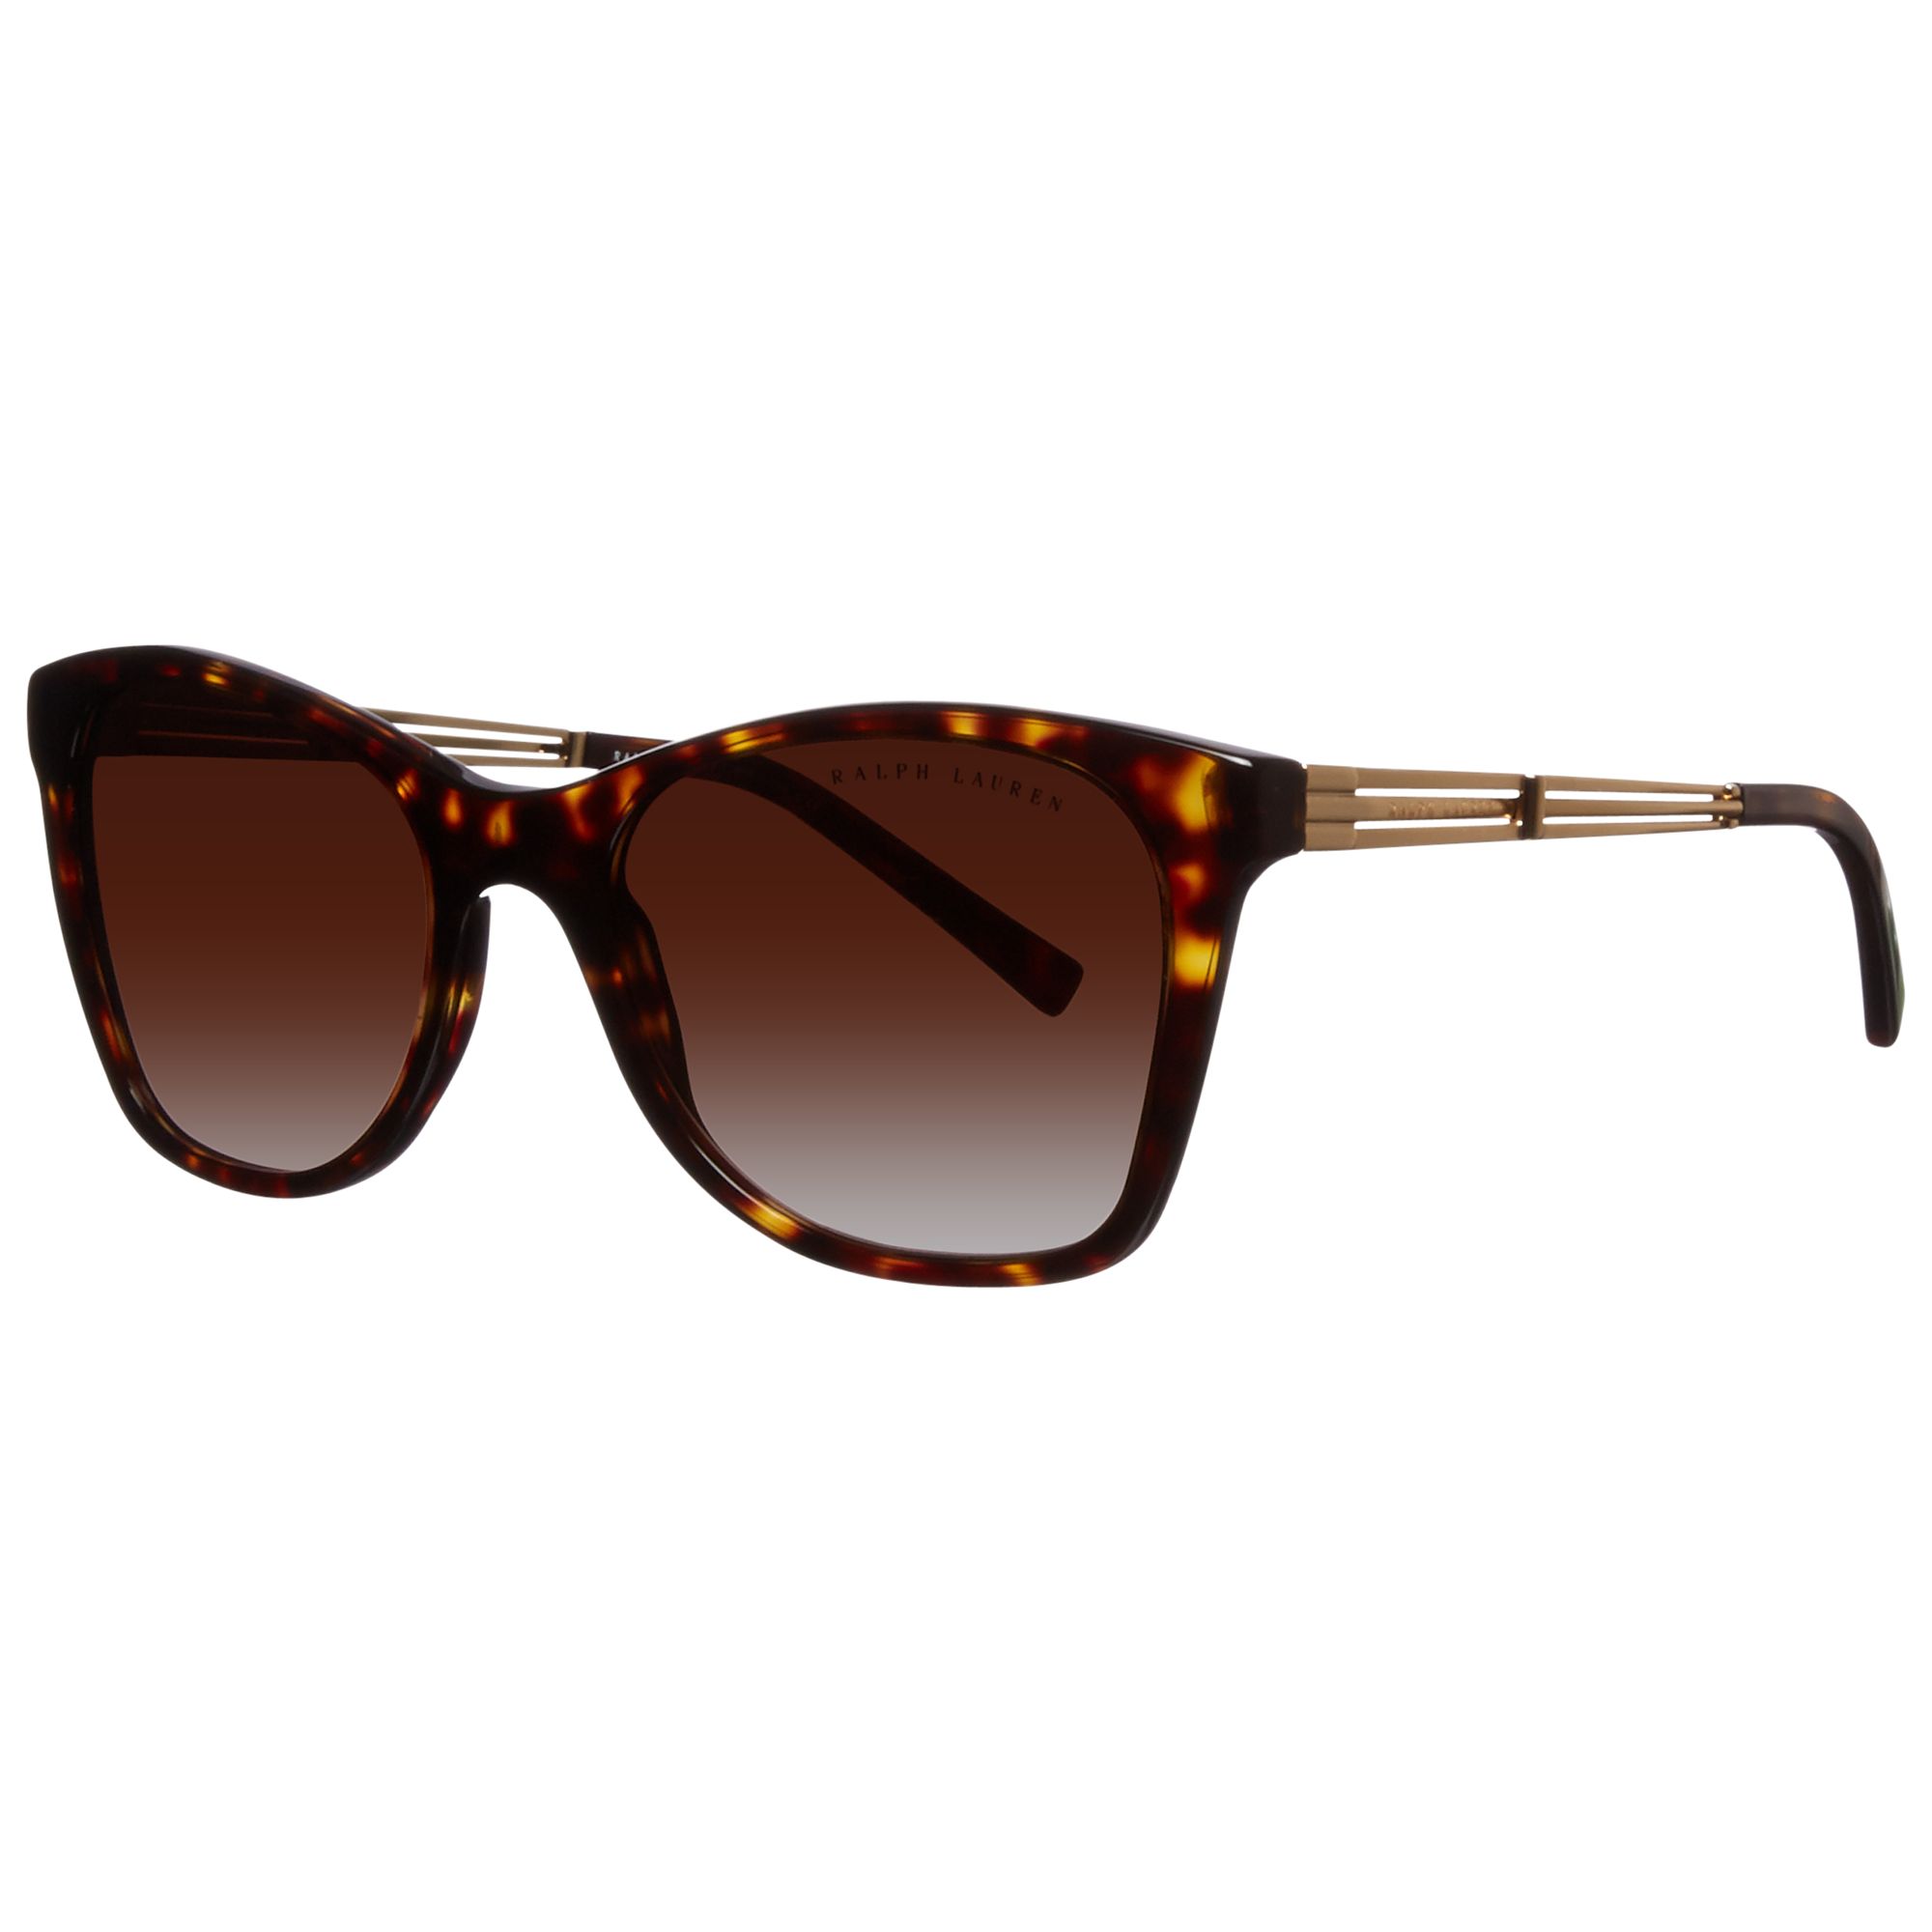 Ralph Lauren RL8113 Cat’s Eye Sunglasses, Dark Brown at John Lewis ...